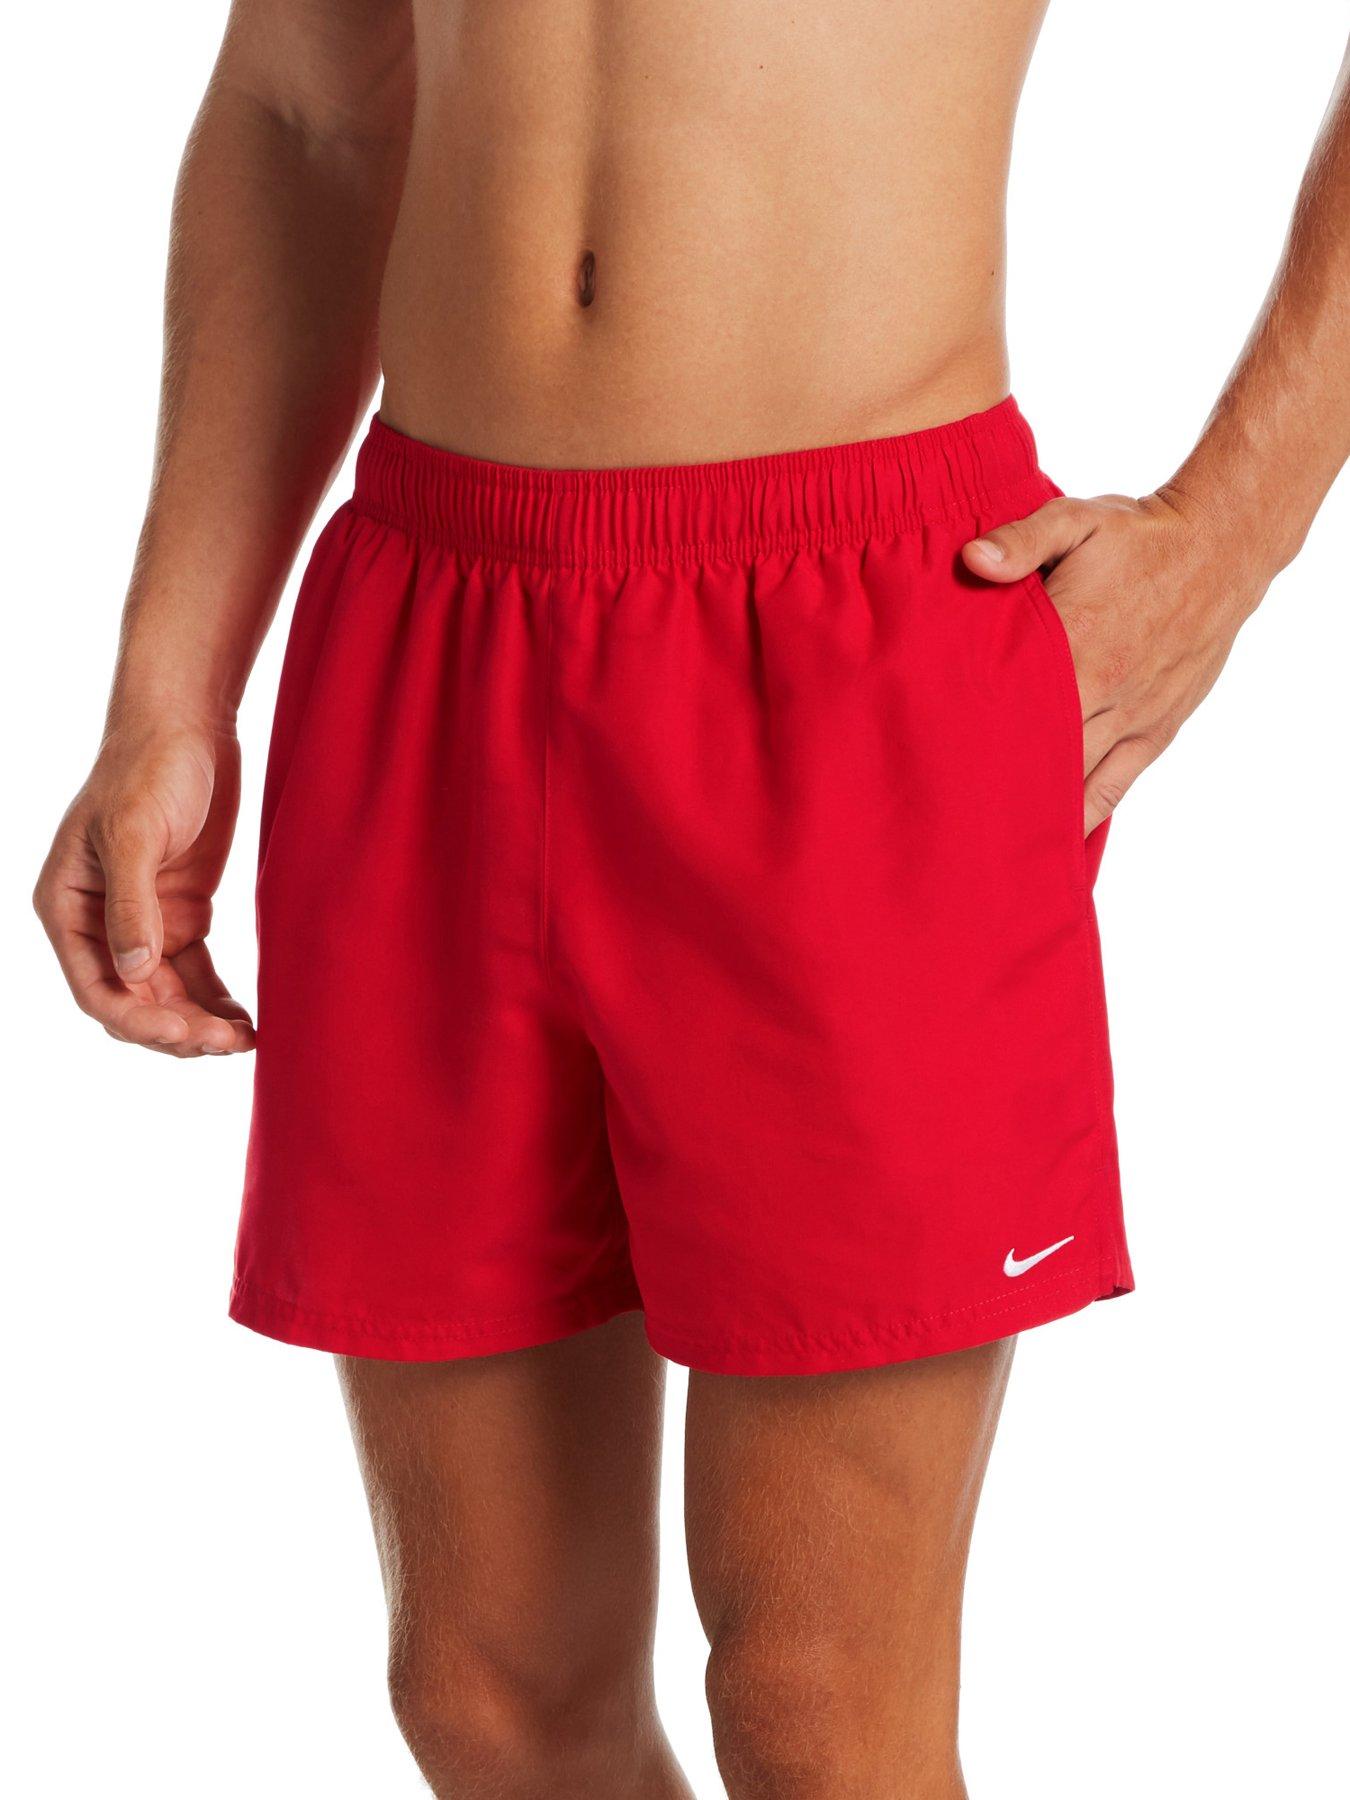 Men's Nike Sports Clothing, Nike Dri Fit Men's